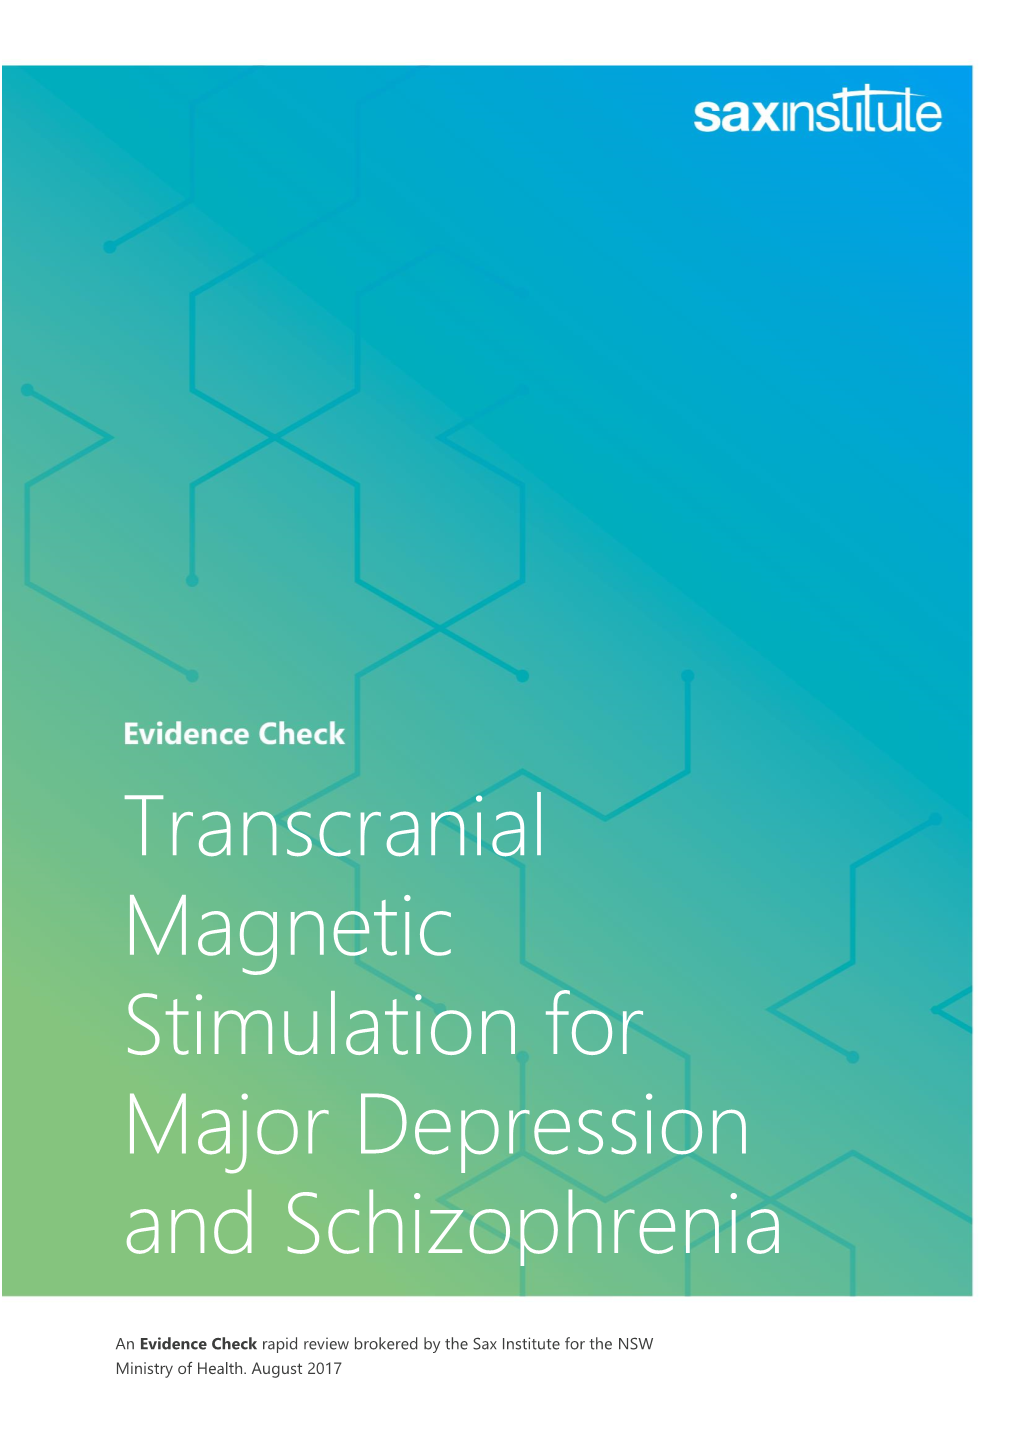 Transcranial Magnetic Stimulation for Major Depression and Schizophrenia